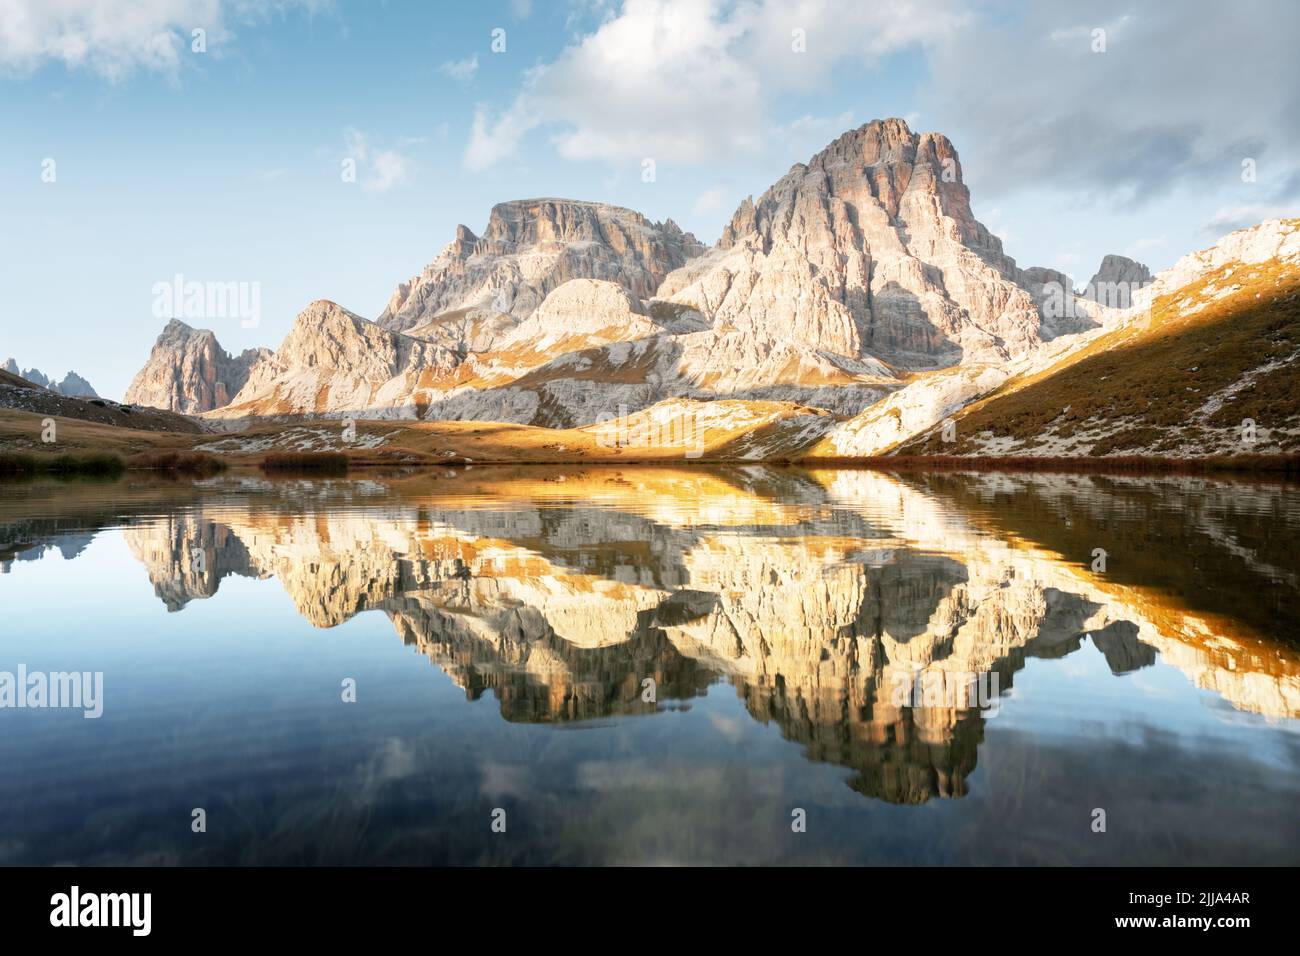 Klares Wasser des Alpensees Piani im Nationalpark Tre Cime Di Laveredo, Dolomiten, Italien. Malerische Landschaft mit Schusterplatte Berge, Orangengras und kleinen See im Herbst Dolomiten Alpen Stockfoto